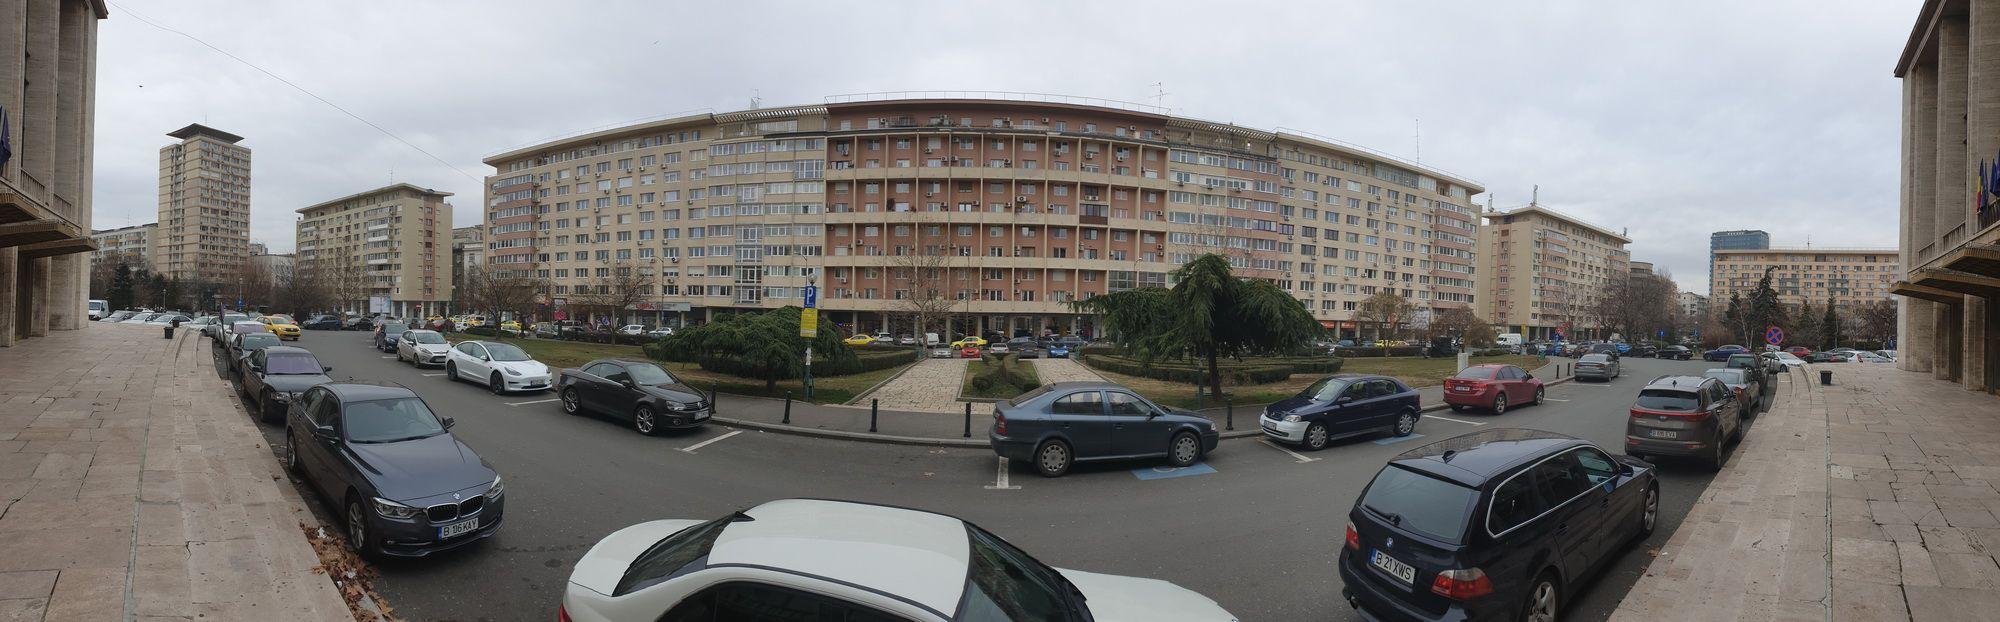 Ansamblul arhitectonic din zona Sala Palatului, București. Foto Lucian Muntean